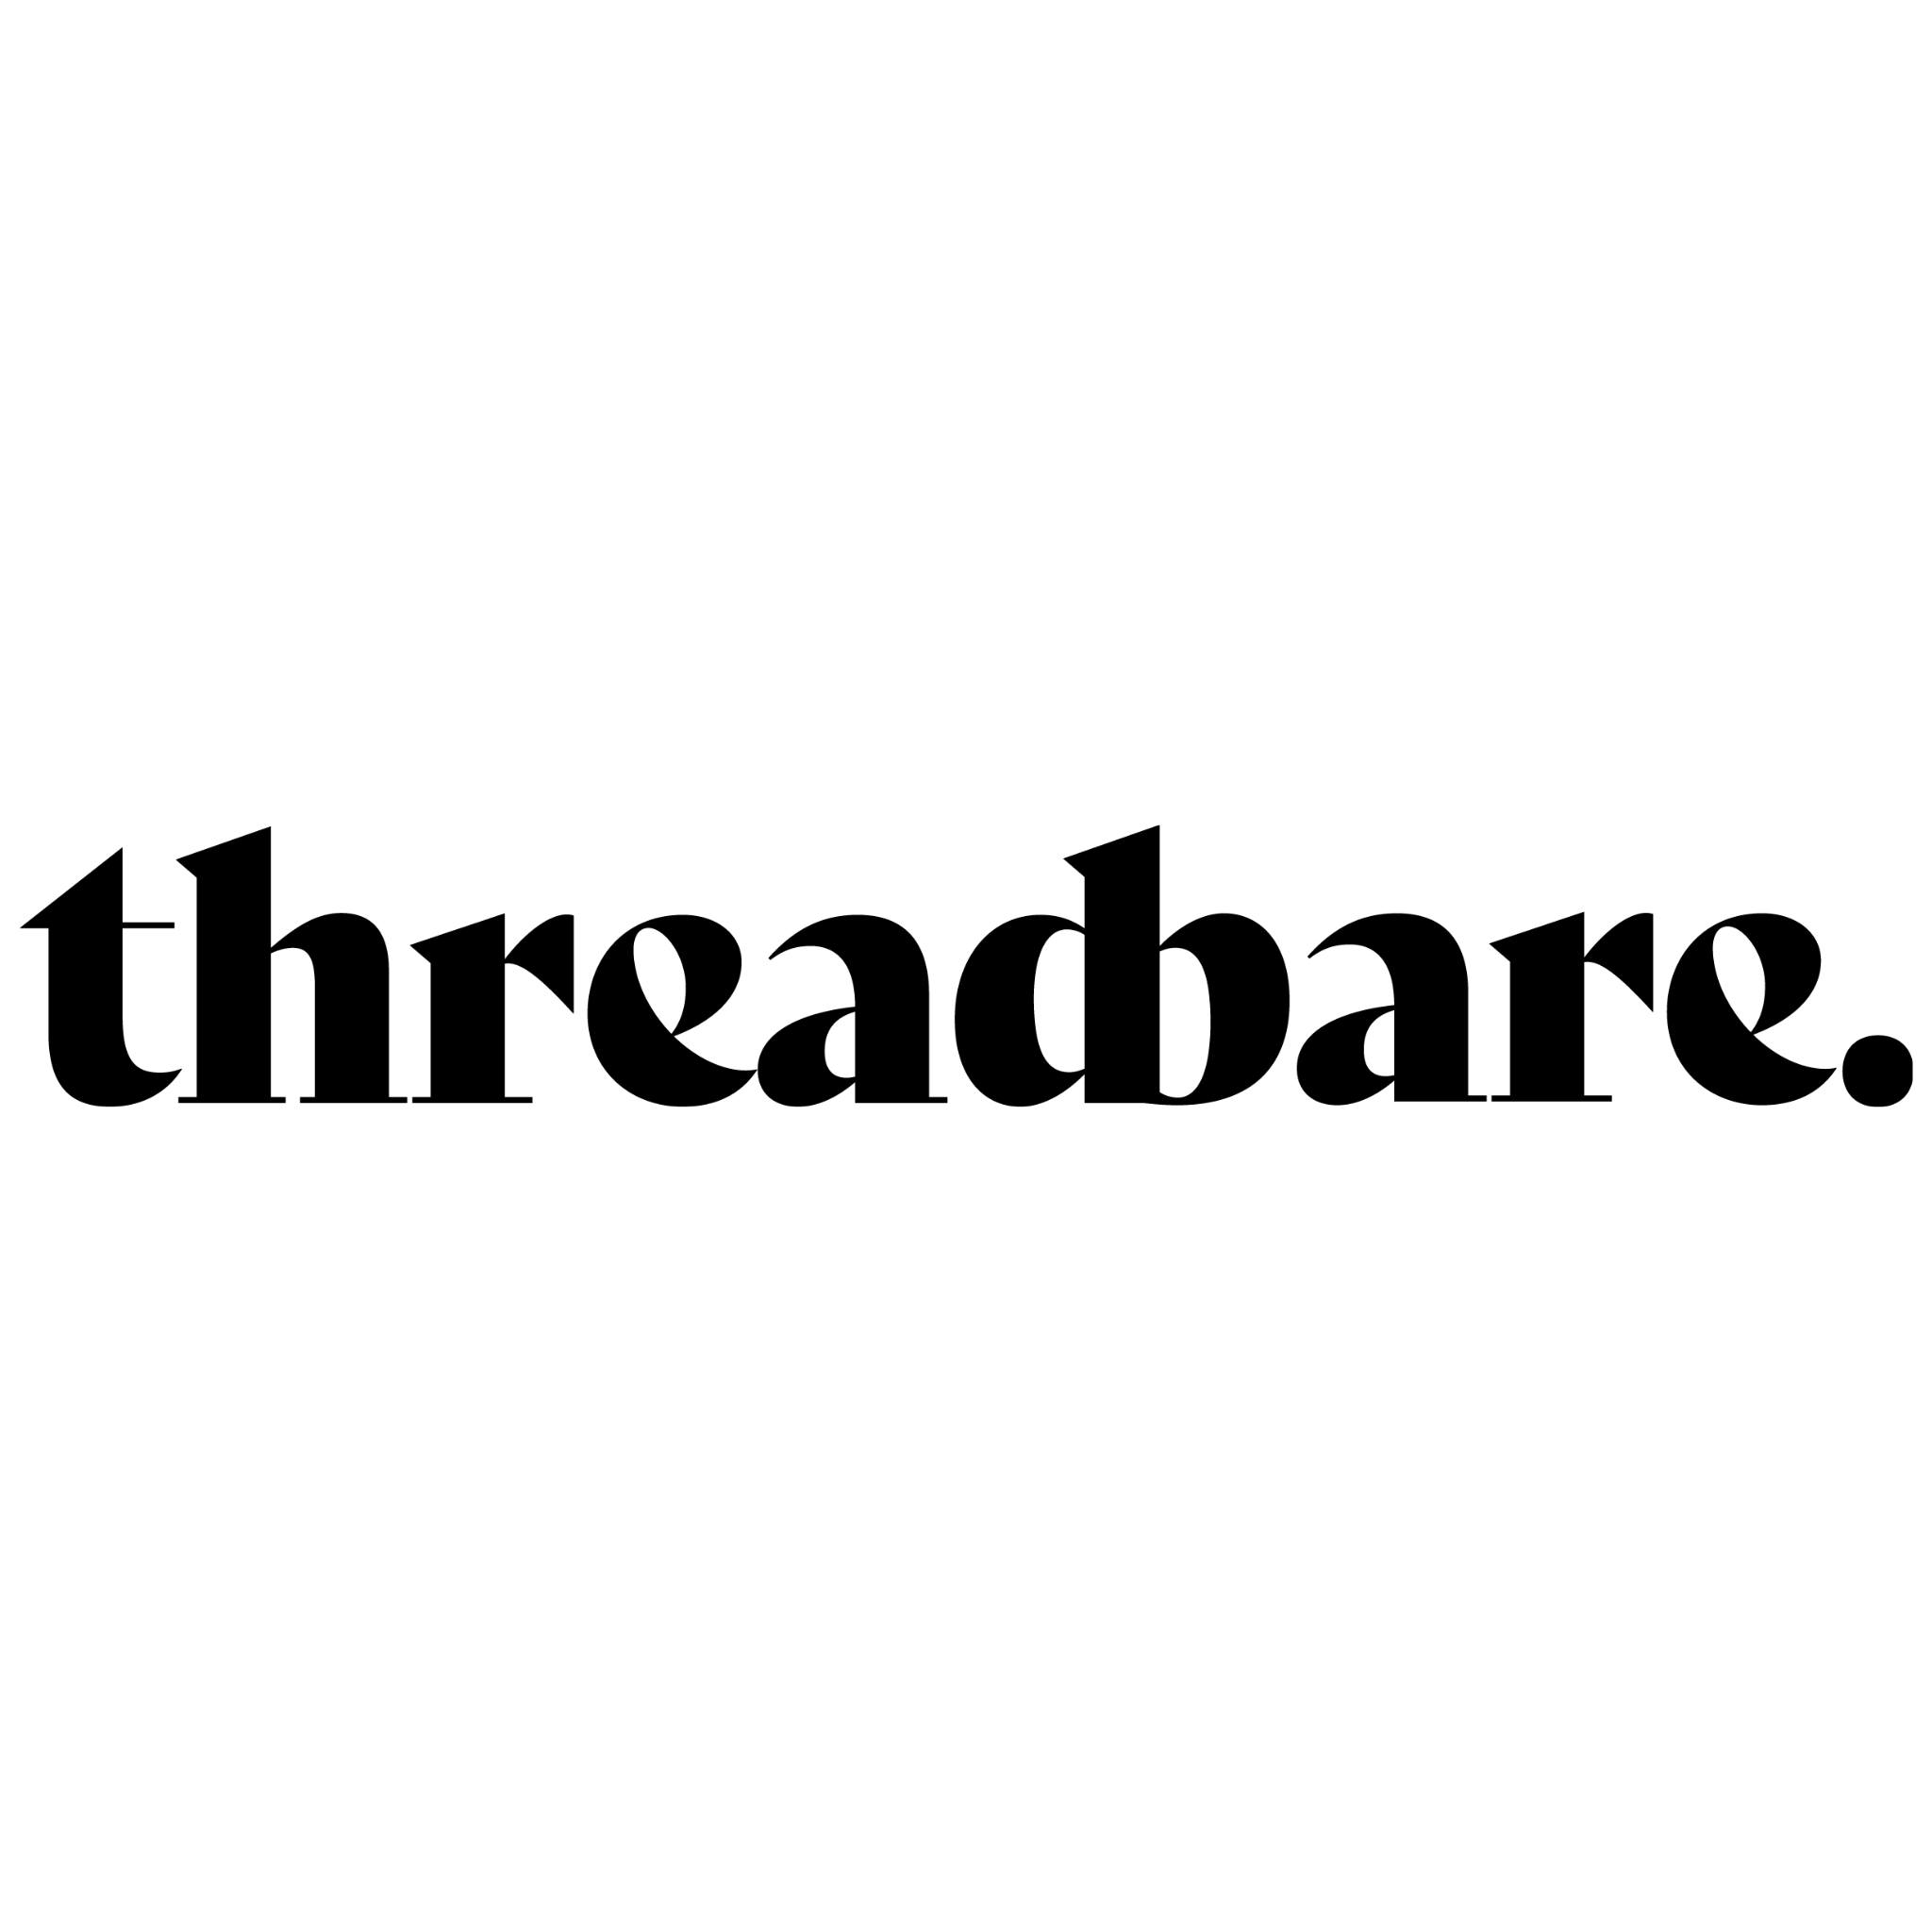 Threadbare